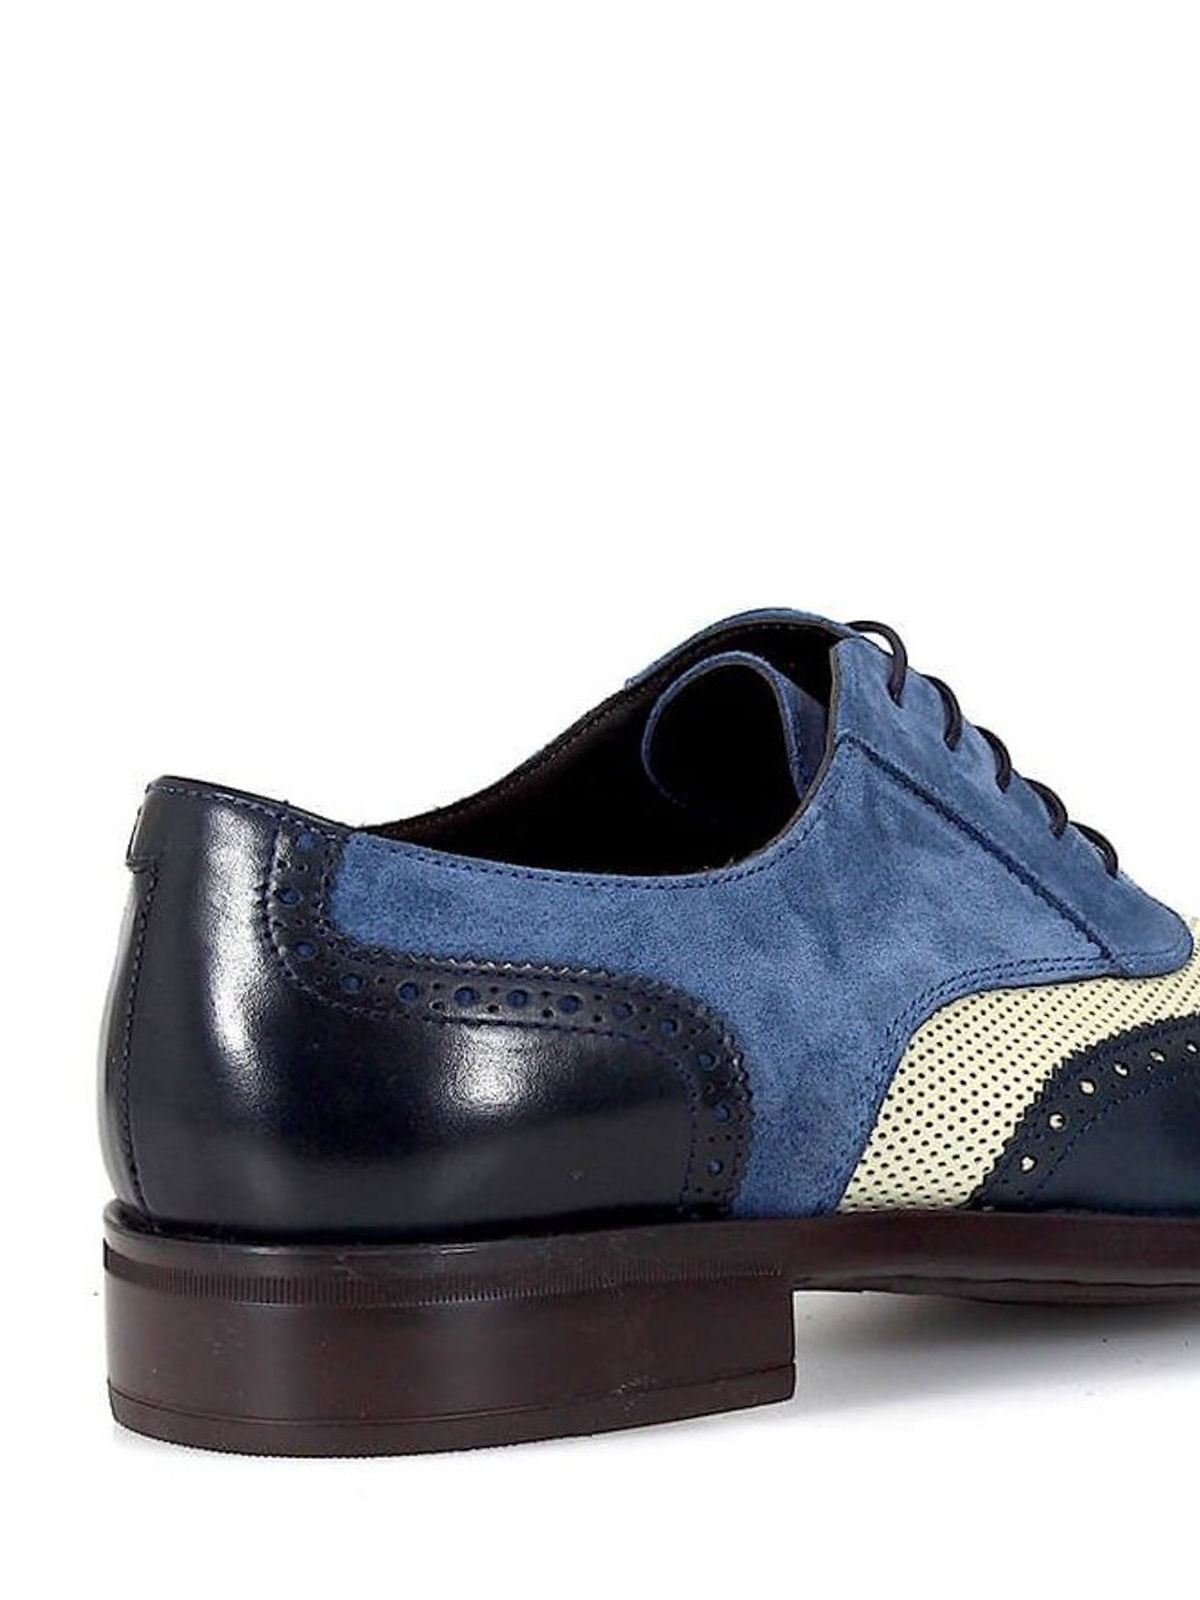 Moreschi - Oxford in suede e pelle tricolore - scarpe stringate - 42160